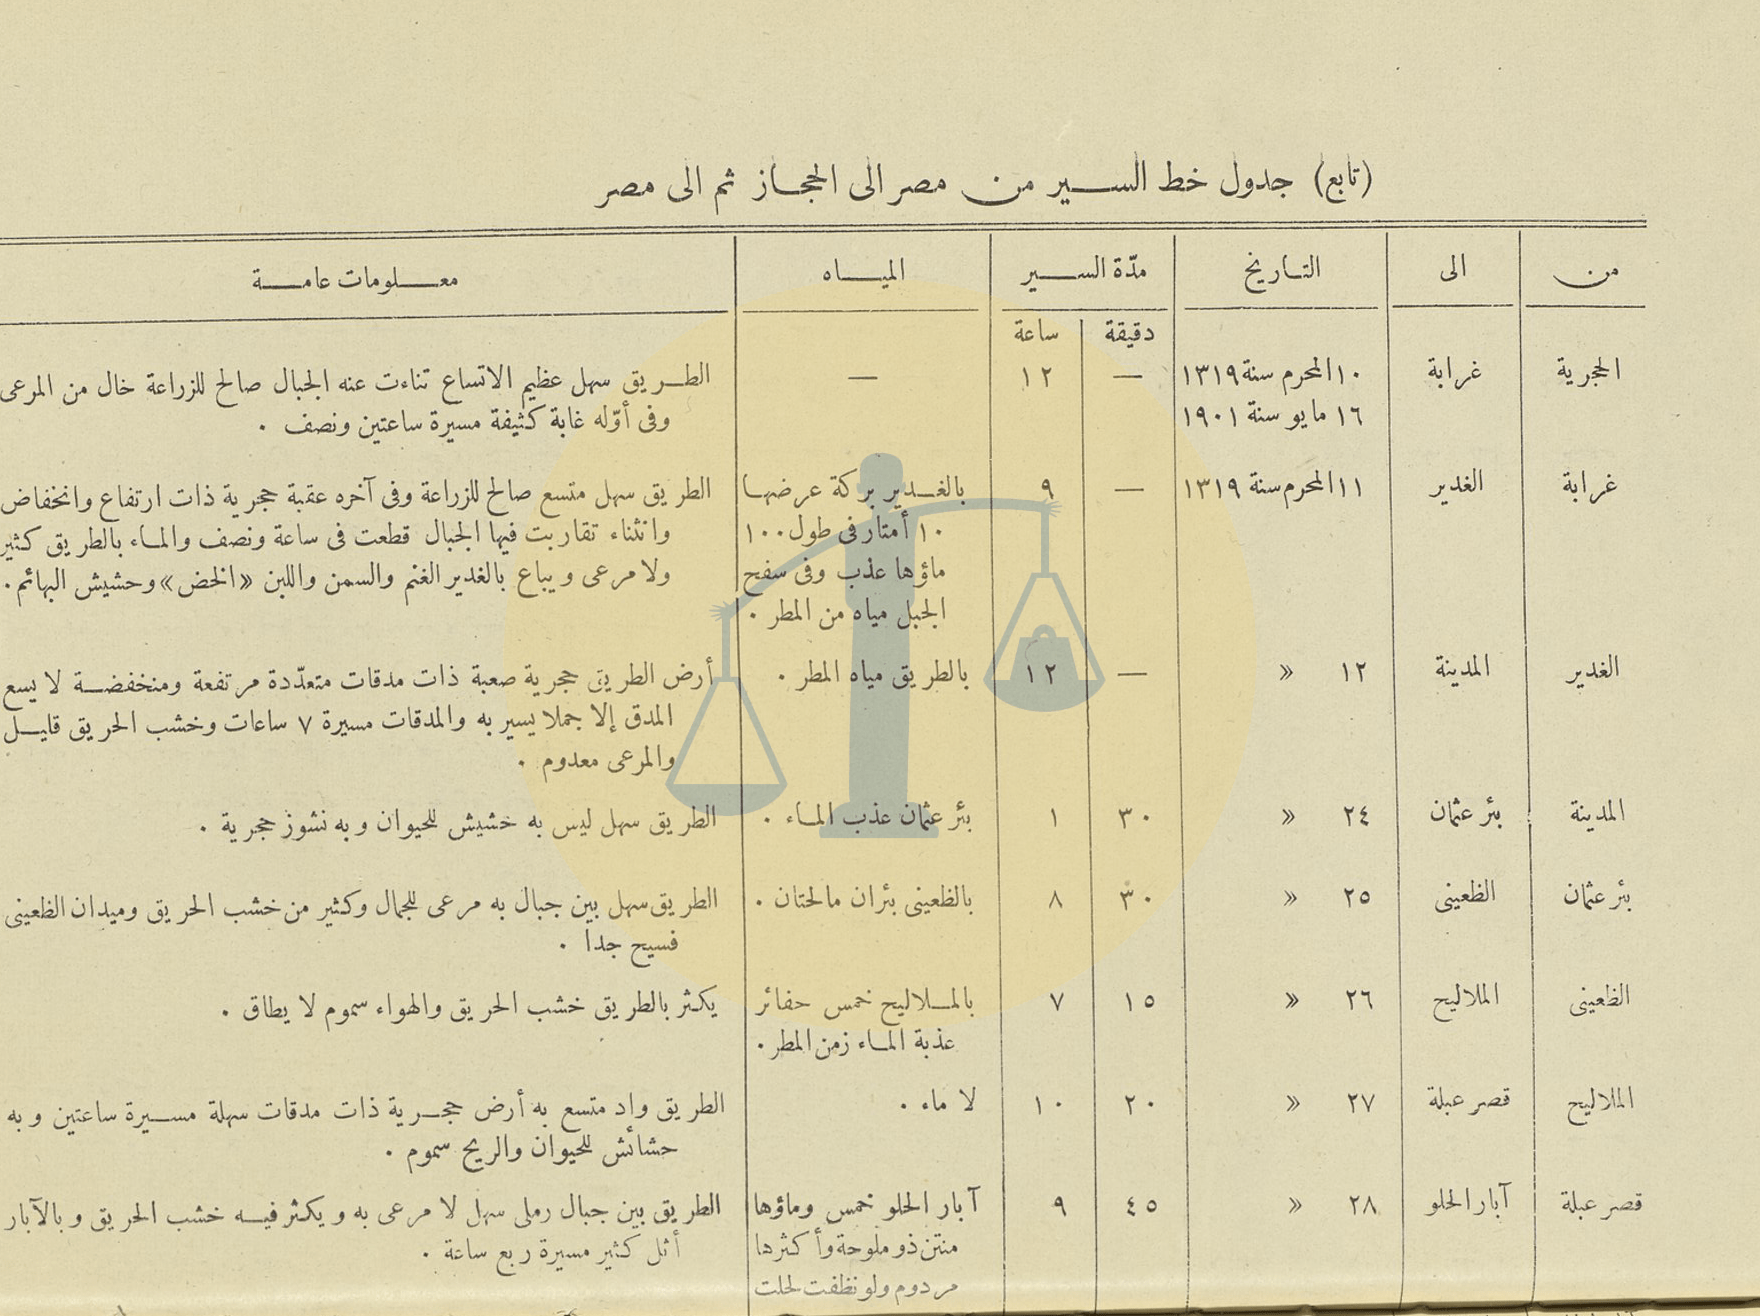 جدول خط السير من مصر إلى الحجاز قبل سنوات كوليرا 47 - ص 3